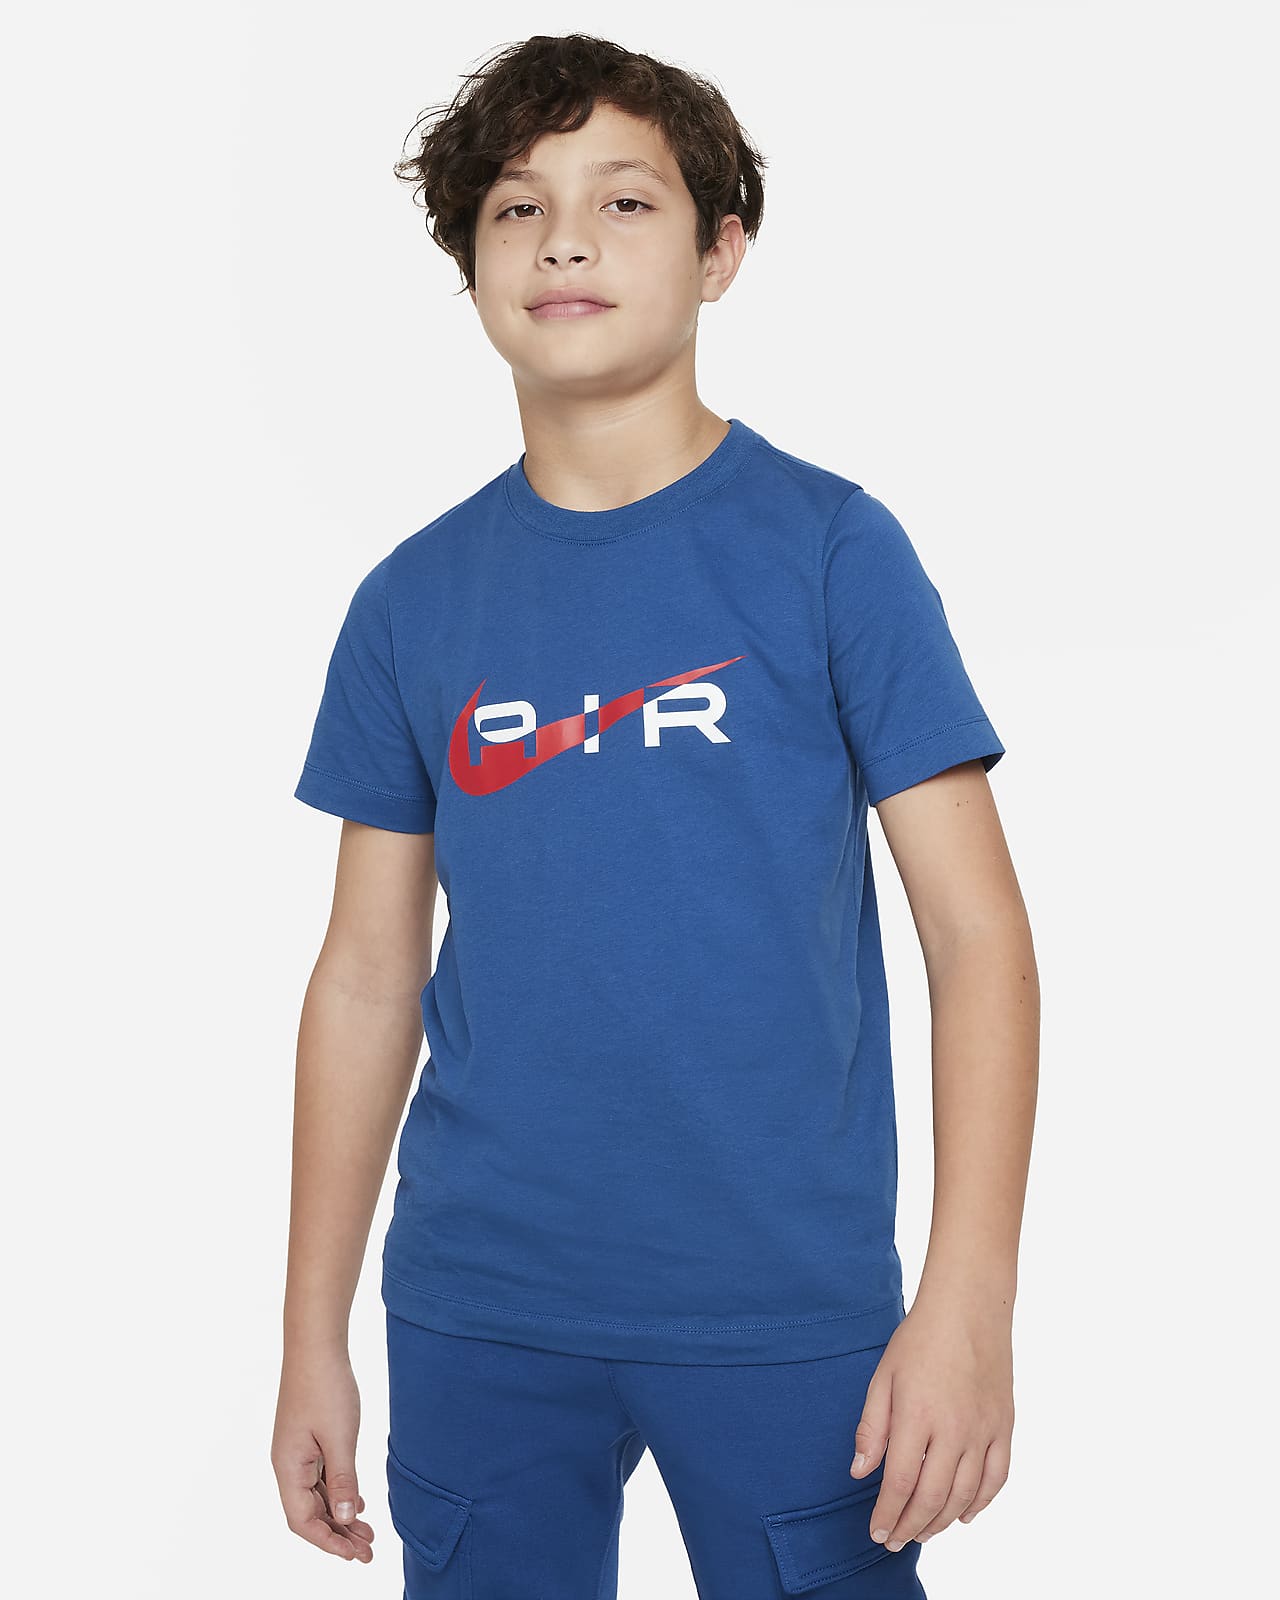 T-shirt Nike Air för ungdom (killar)